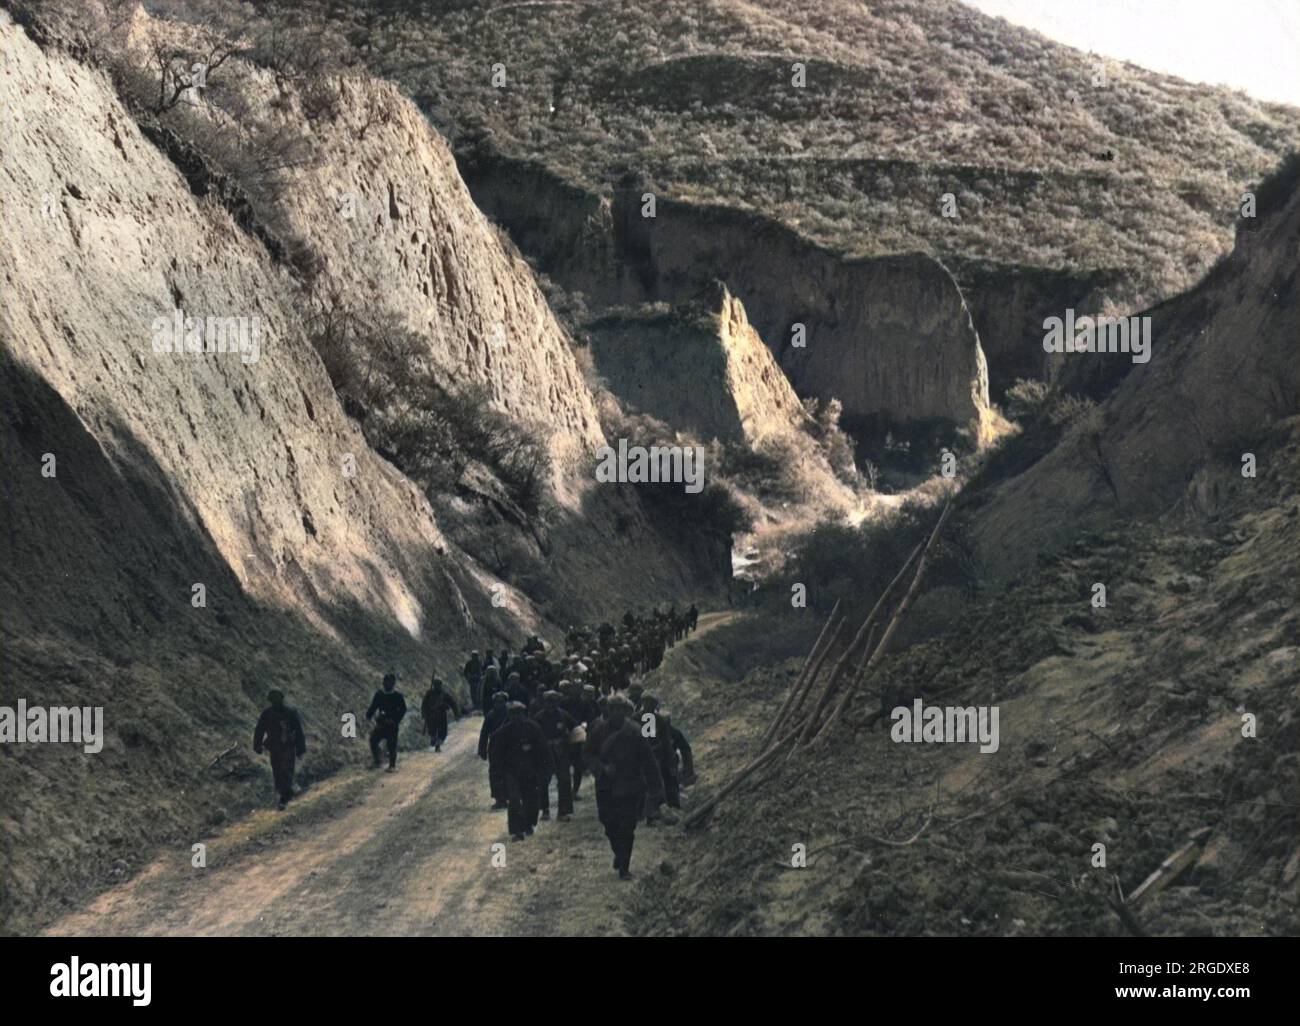 I comunisti cinesi fotografati su un terreno roccioso durante la lunga marcia, una serie di marce che li portavano dal sud della Cina a nord e ovest, fuggendo dal Kuomintang (Partito nazionalista Cinese). Foto Stock